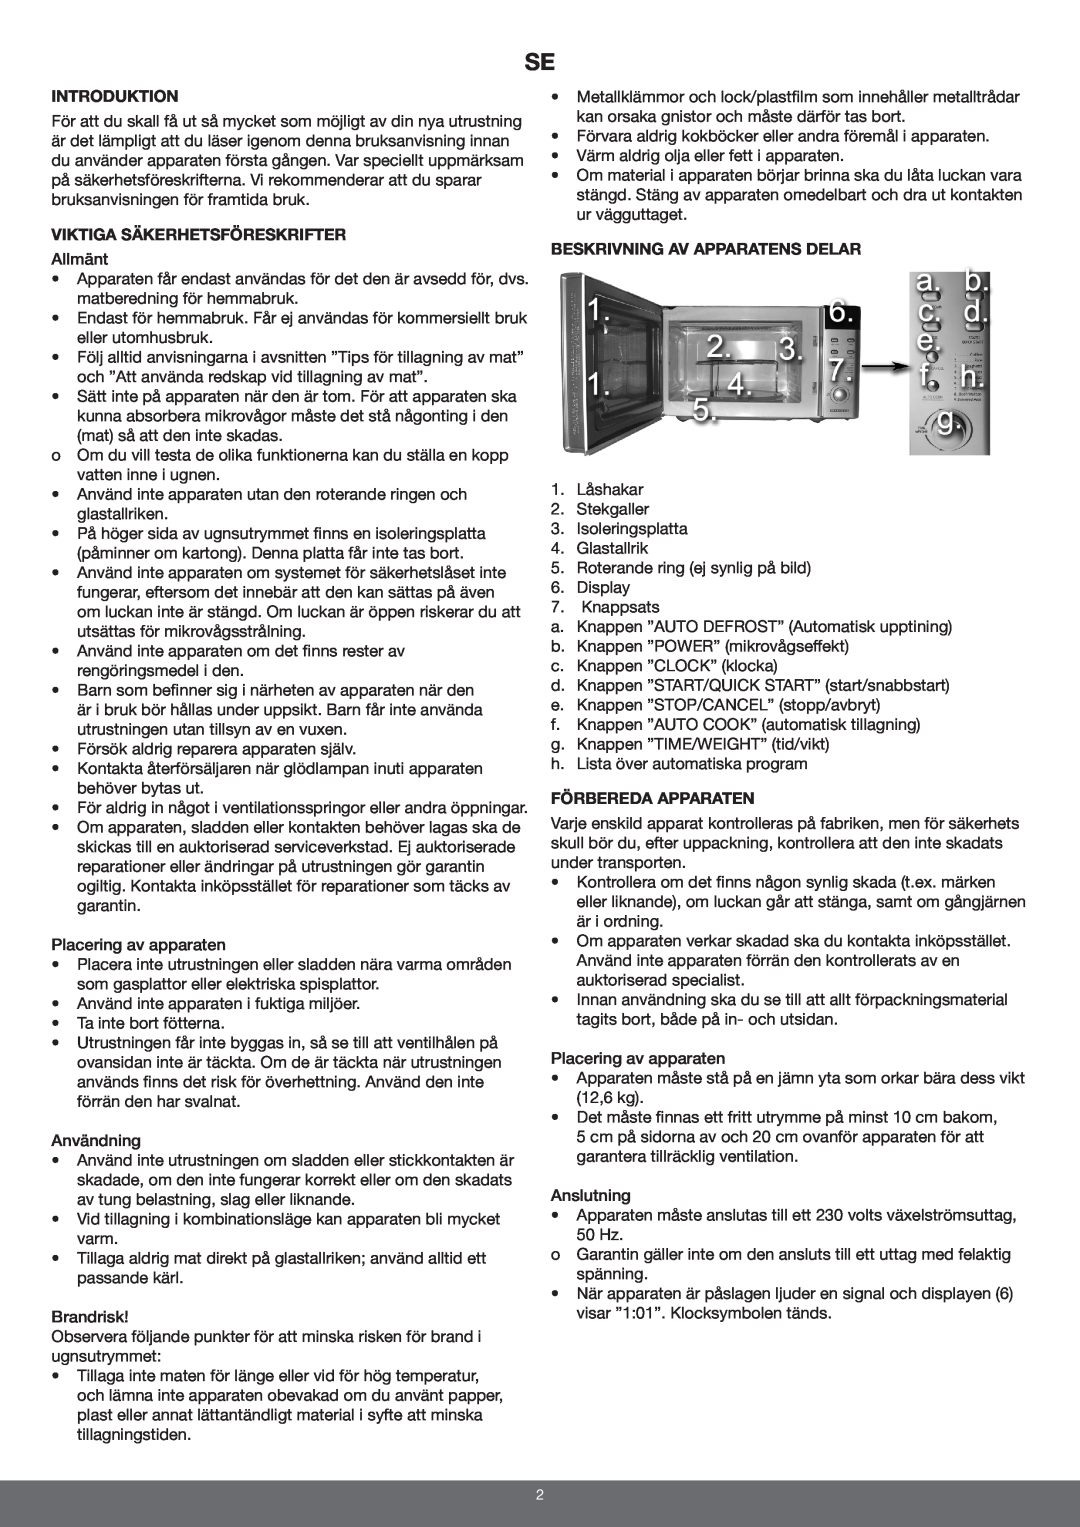 Melissa 653-094 manual Introduktion, Viktiga Säkerhetsföreskrifter, Beskrivning Av Apparatens Delar, Förbereda Apparaten 